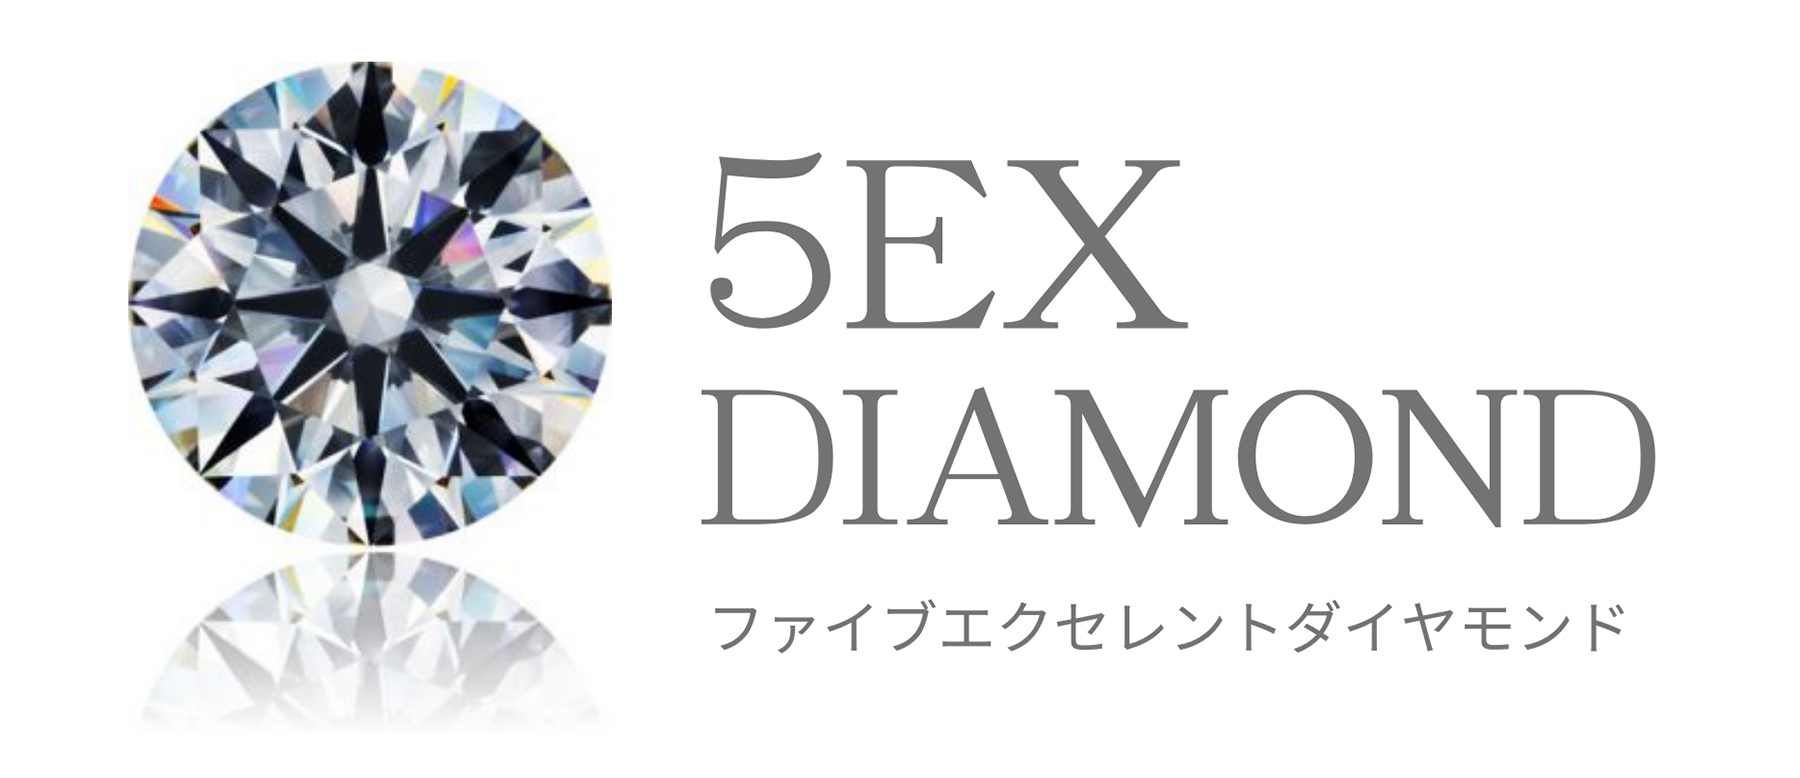 5EX DIAMOND ファイブエクセレントダイヤモンド